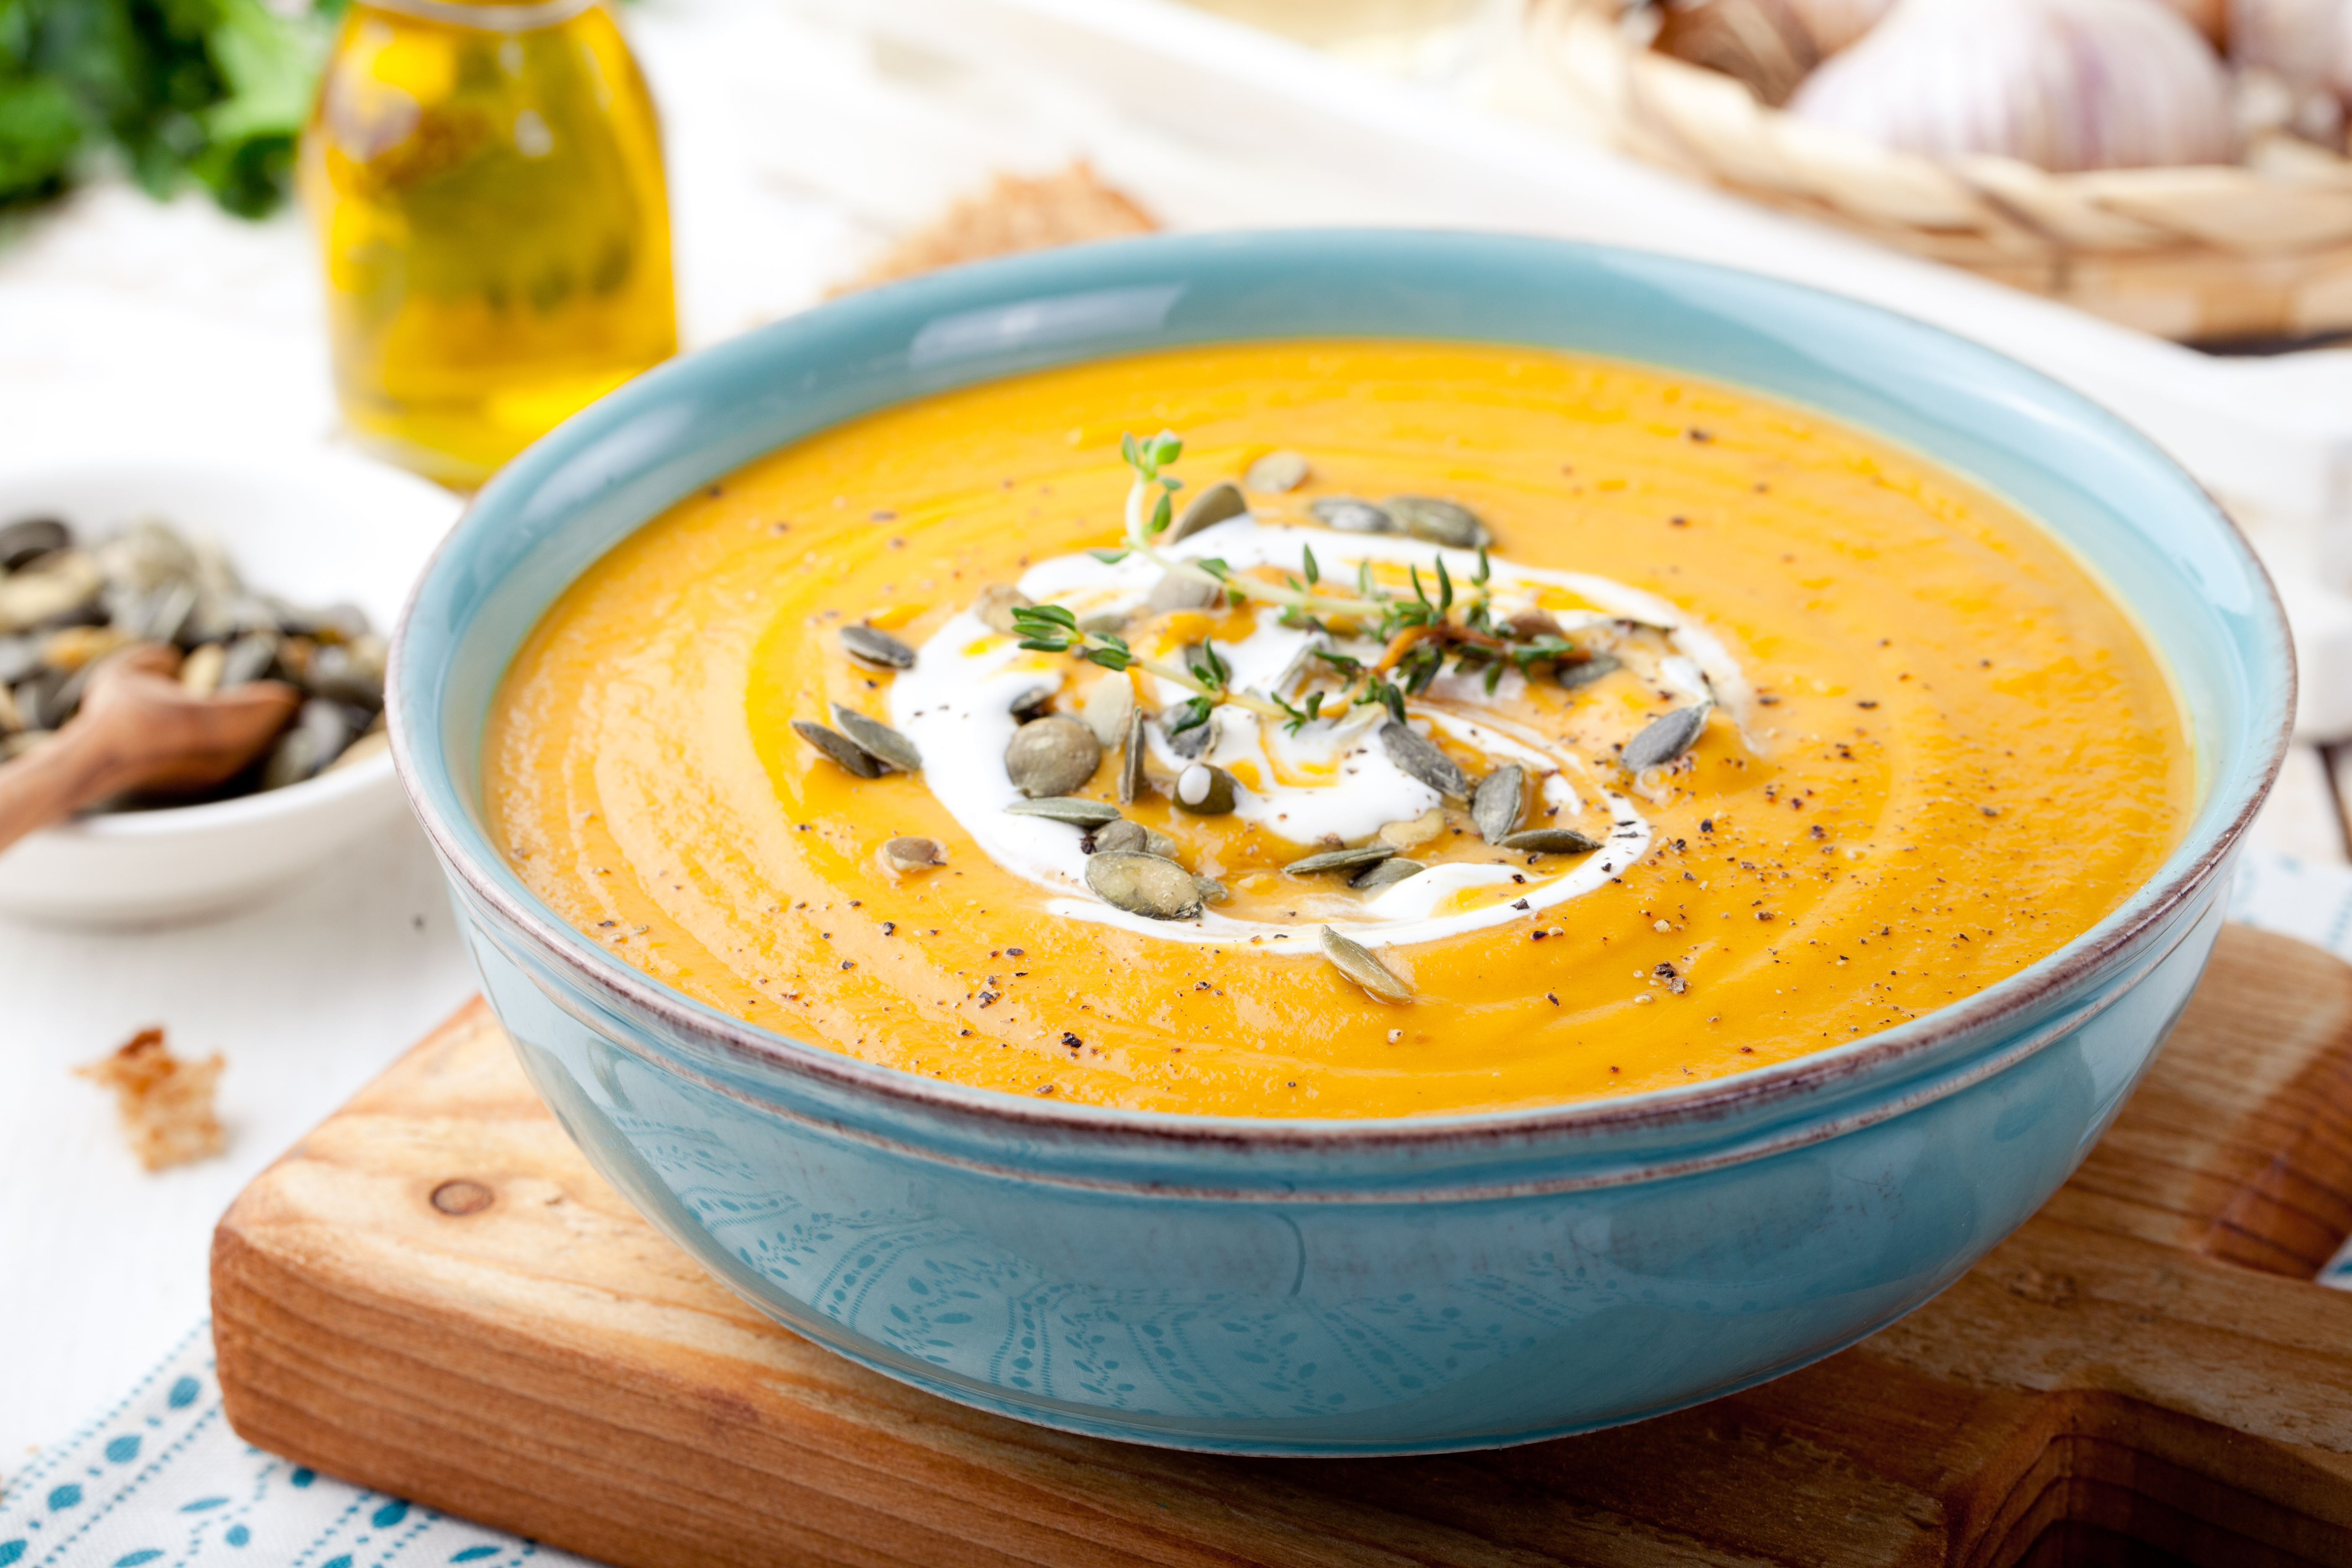 Món súp bí đỏ sẽ là món ăn bổ dưỡng giúp tăng trí nhớ cho bé